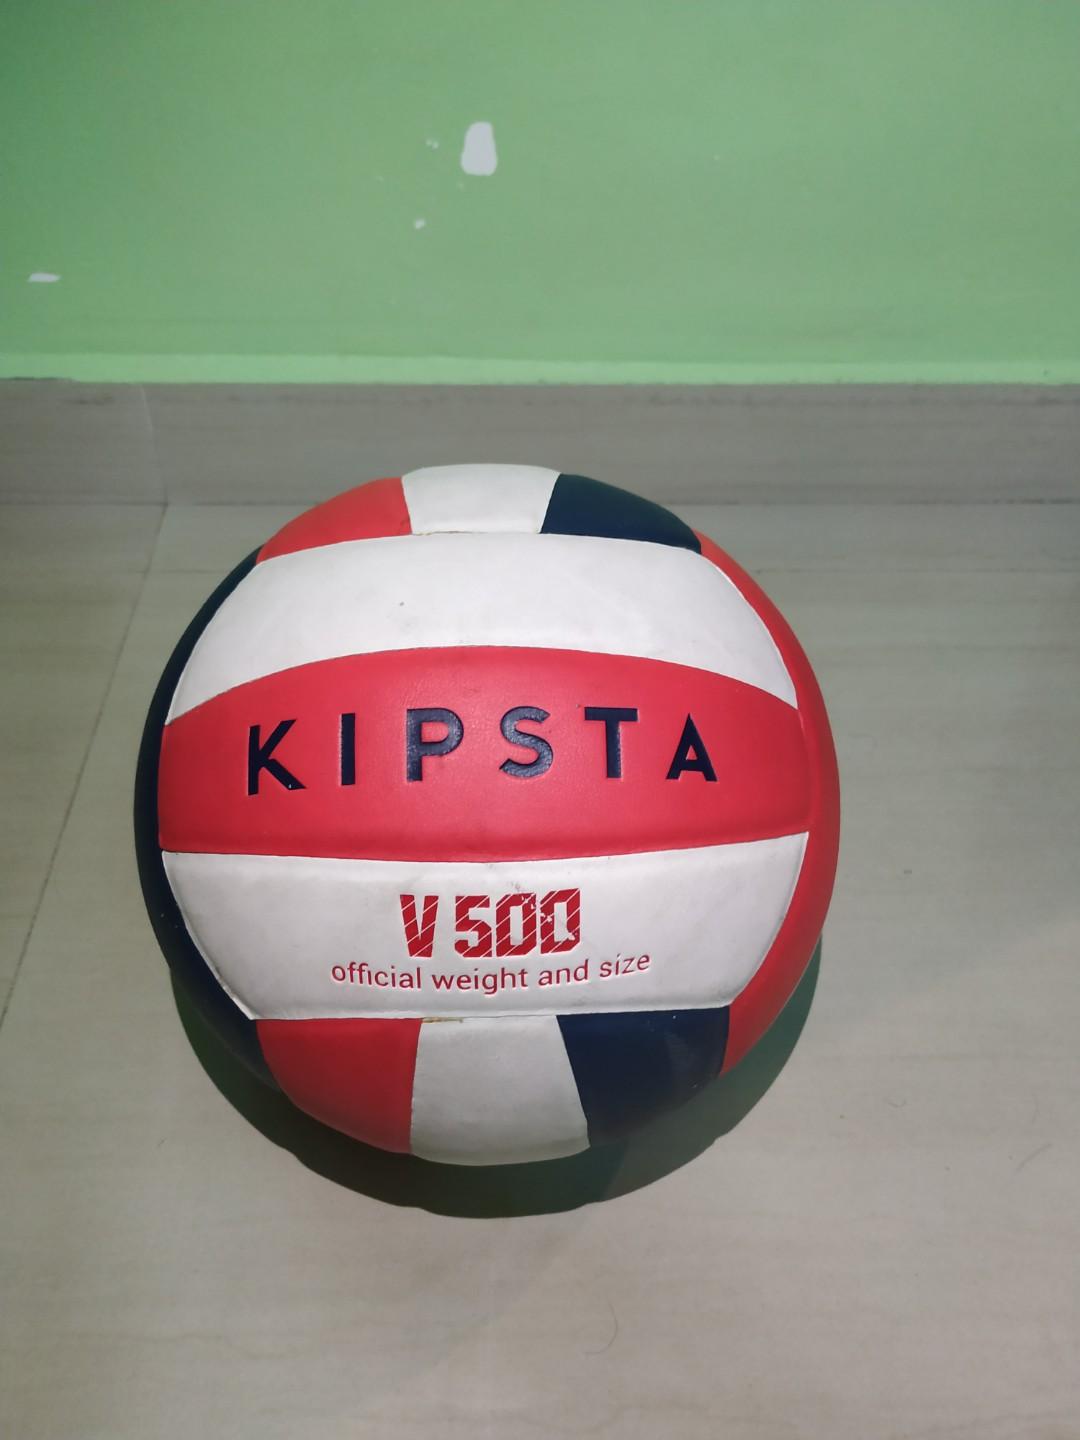 kipsta v500 volleyball